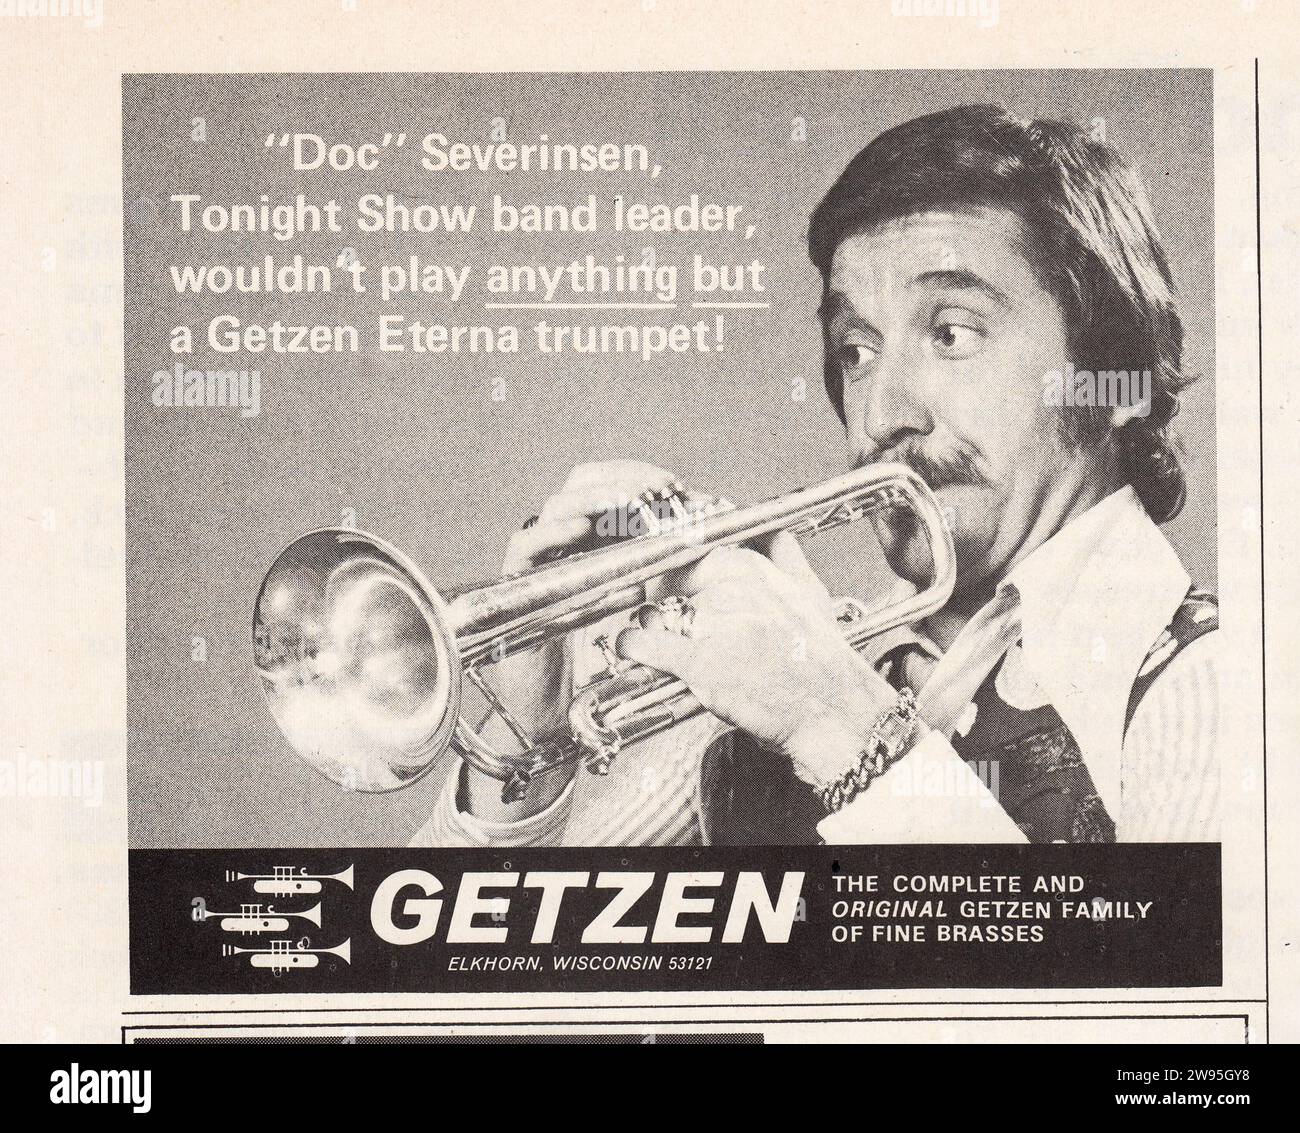 Una pubblicità stampata per le trombe Getzen con la star del jazz e il leader della band del Tonight Show Doc Severinsen. Da una rivista musicale della metà degli anni '1970. Foto Stock